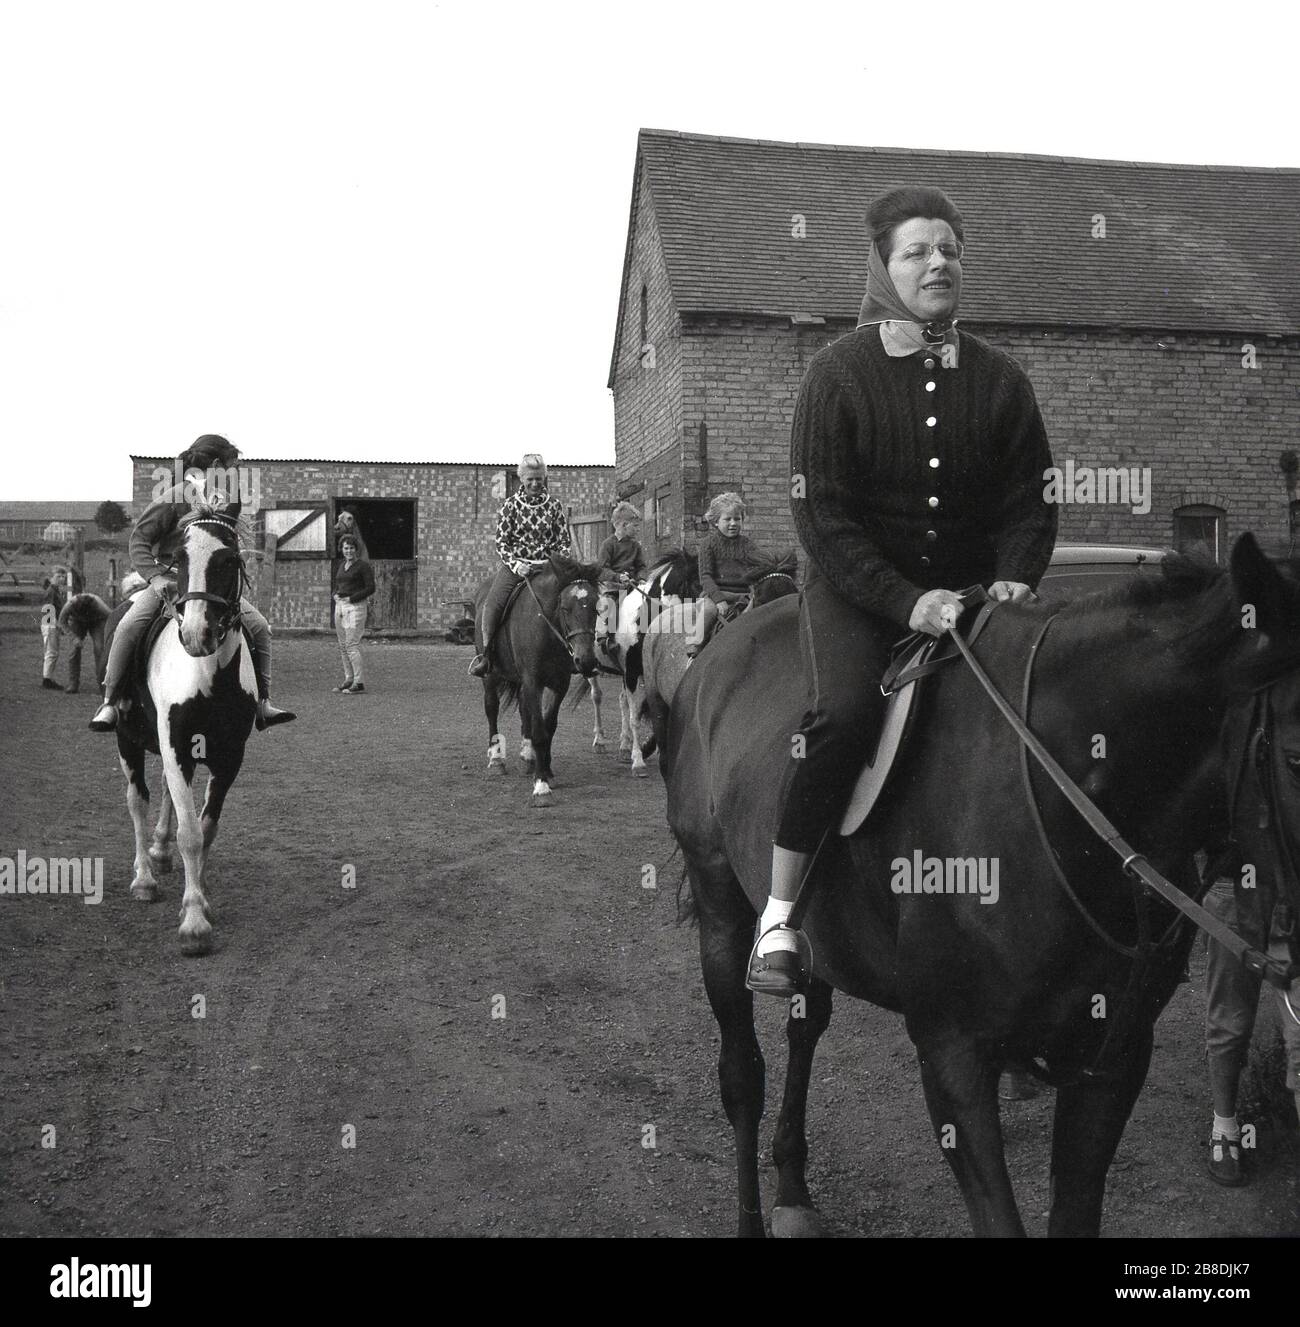 1963, storico, donna e bambini a cavallo in un cortile in una scuola di equitazione, Inghilterra, Regno Unito. Foto Stock